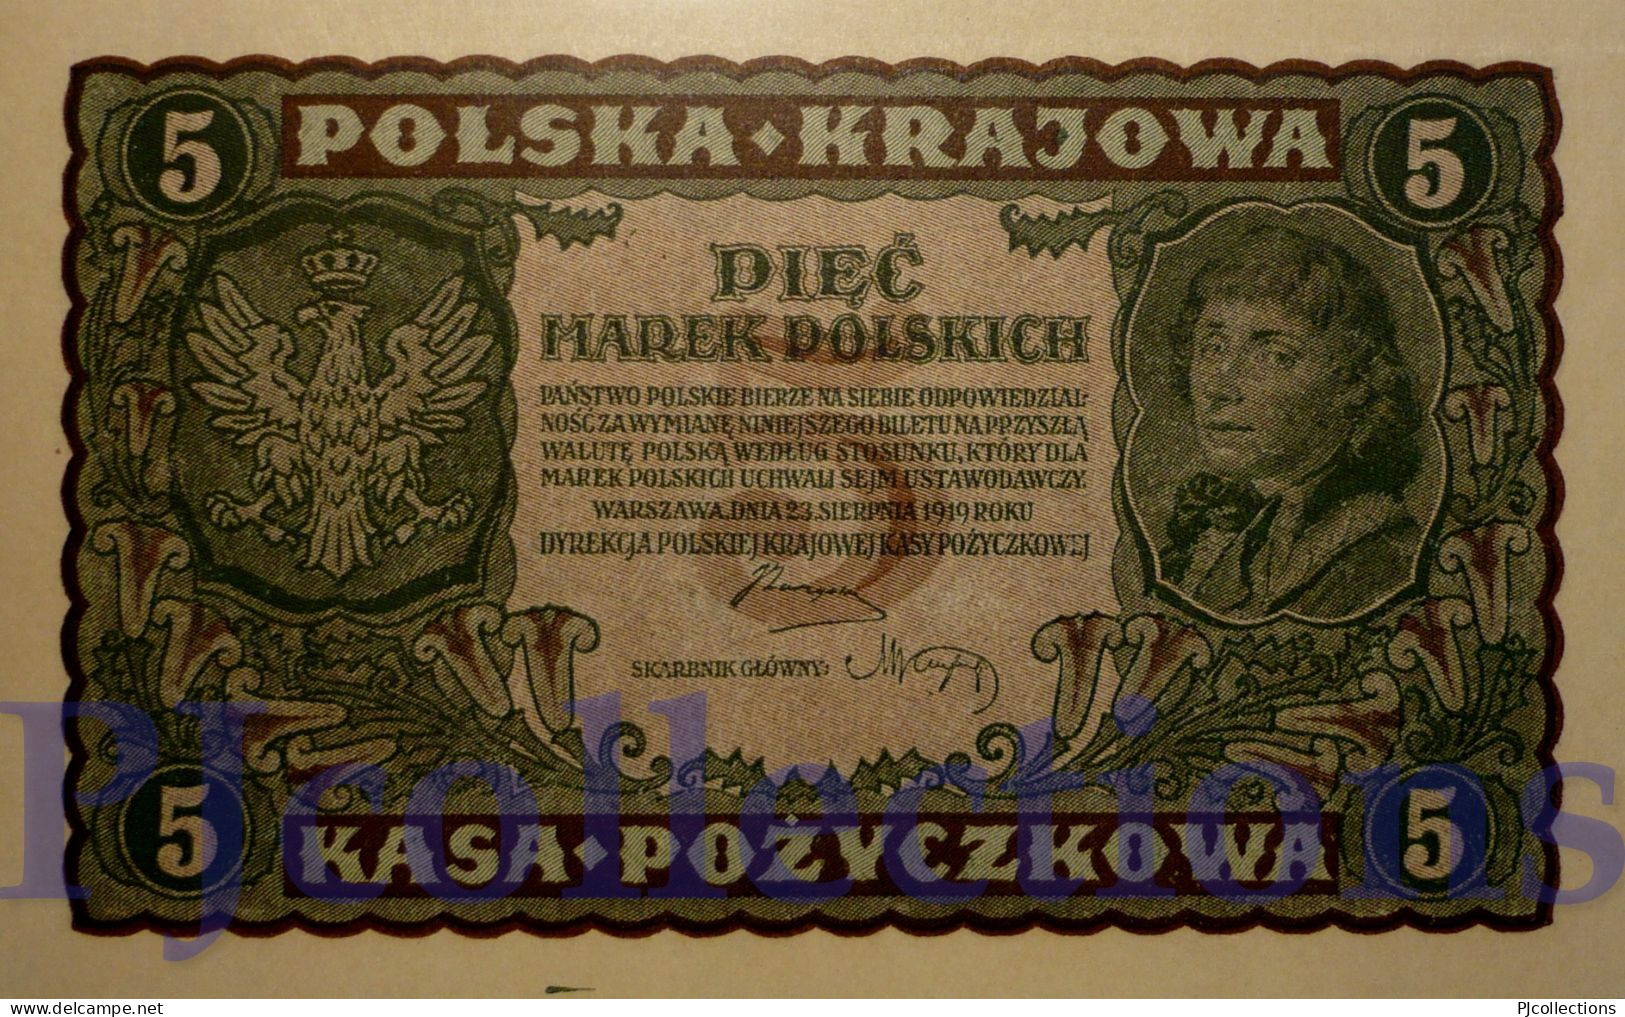 POLONIA - POLAND 5 MAREK 1919 PICK 24 UNC - Poland